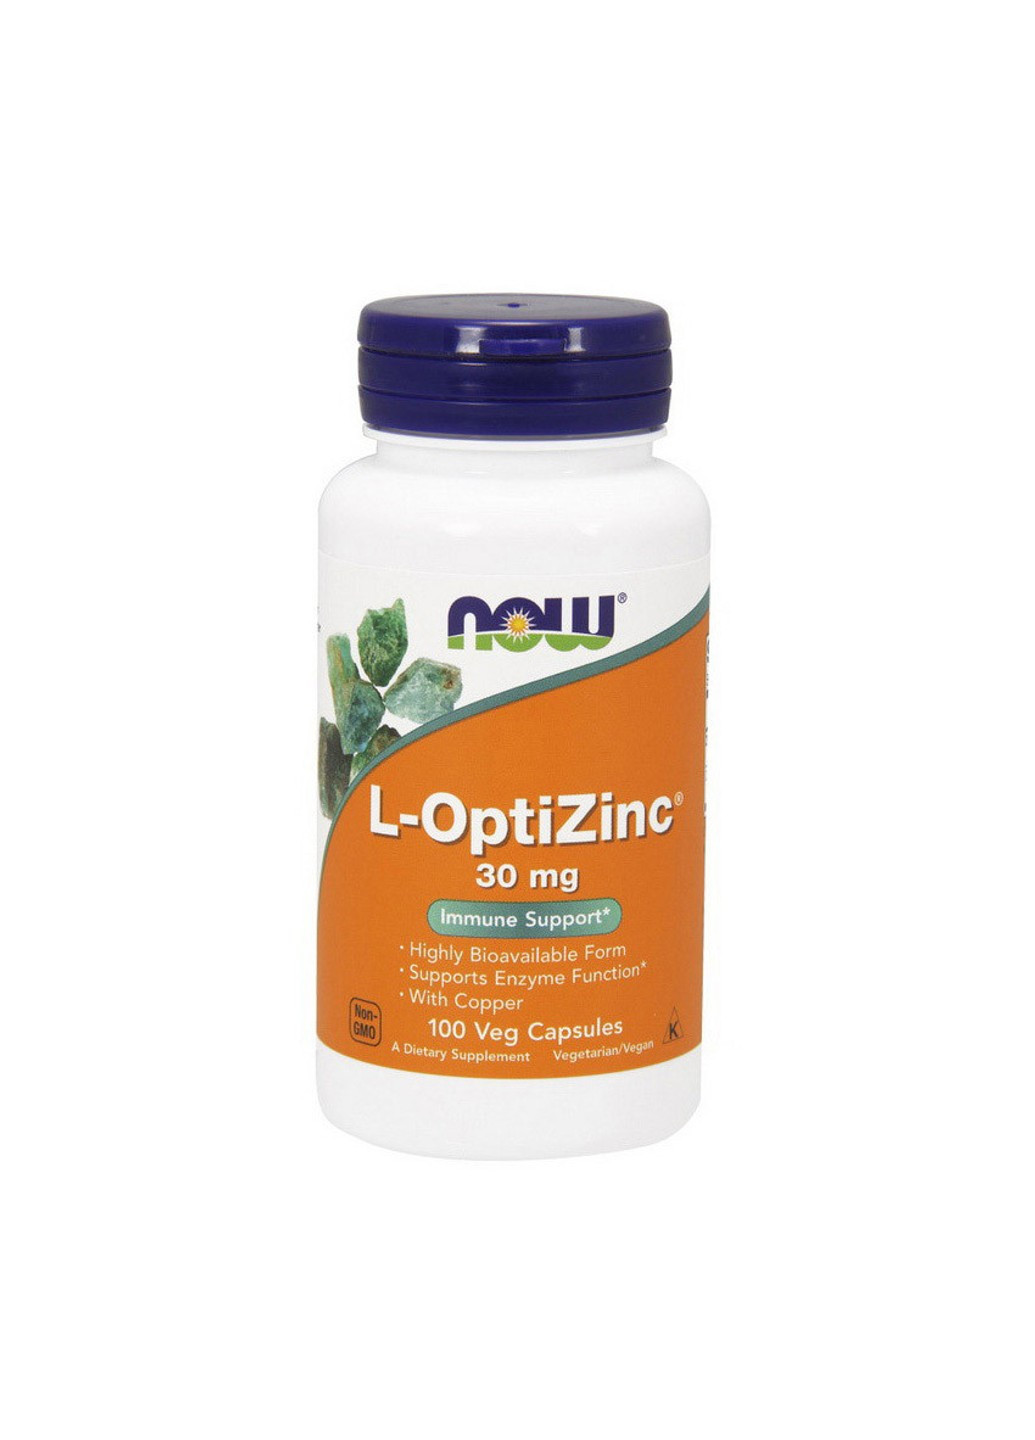 Опти цинк L-OptiZinc 30 mg (100 капс) нау фудс Now Foods (255407505)